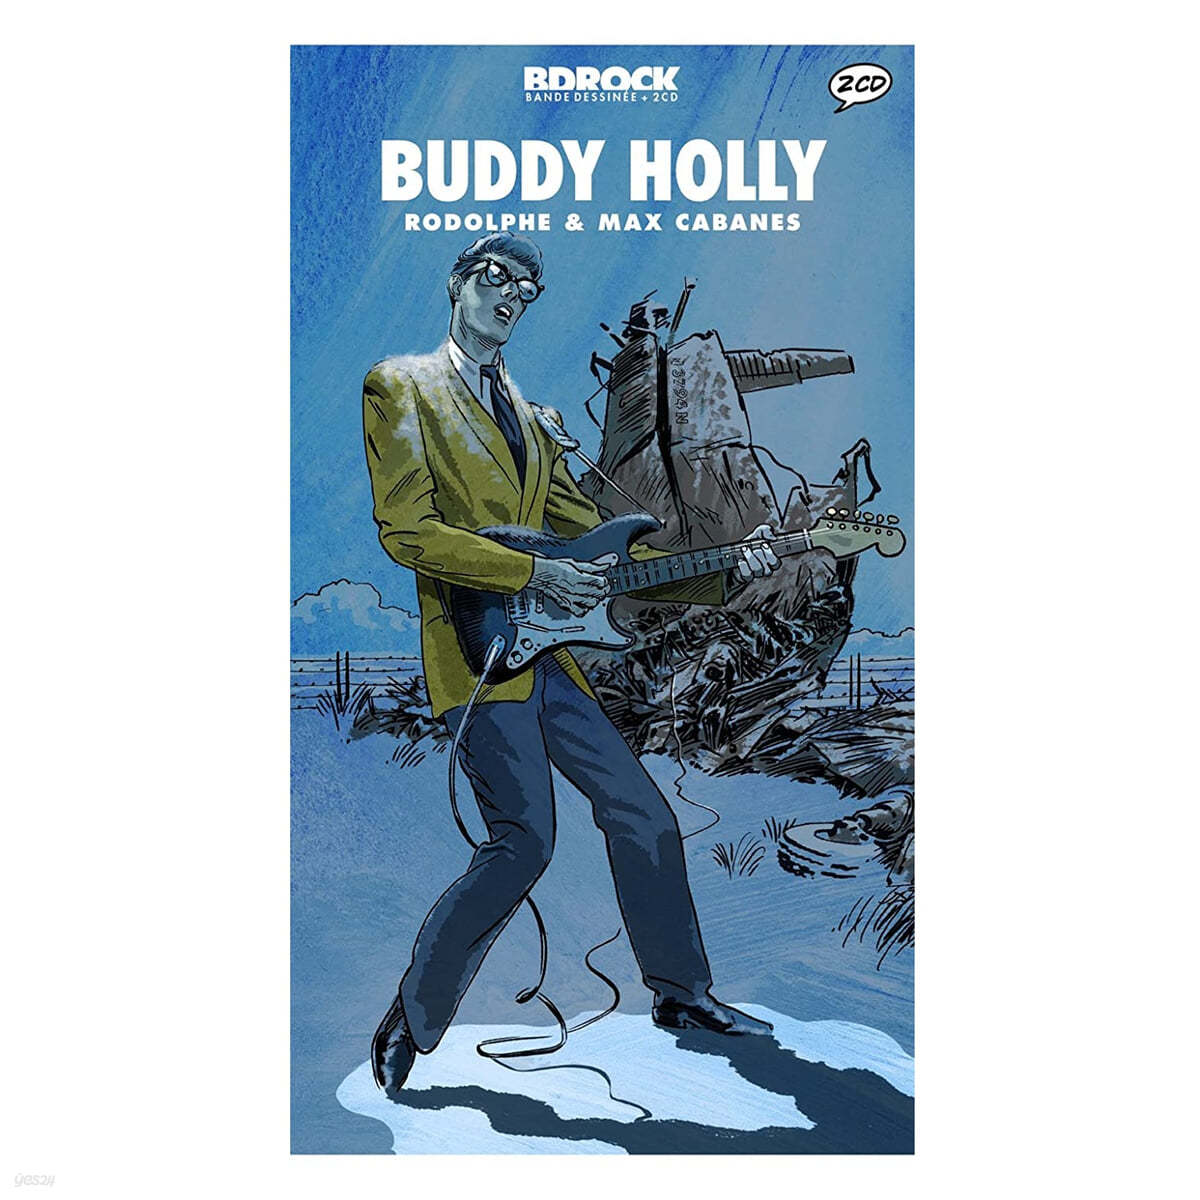 일러스트로 만나는 버디 홀리 (Buddy Holly Illustrated by Rodolphe / Max Cabanes)